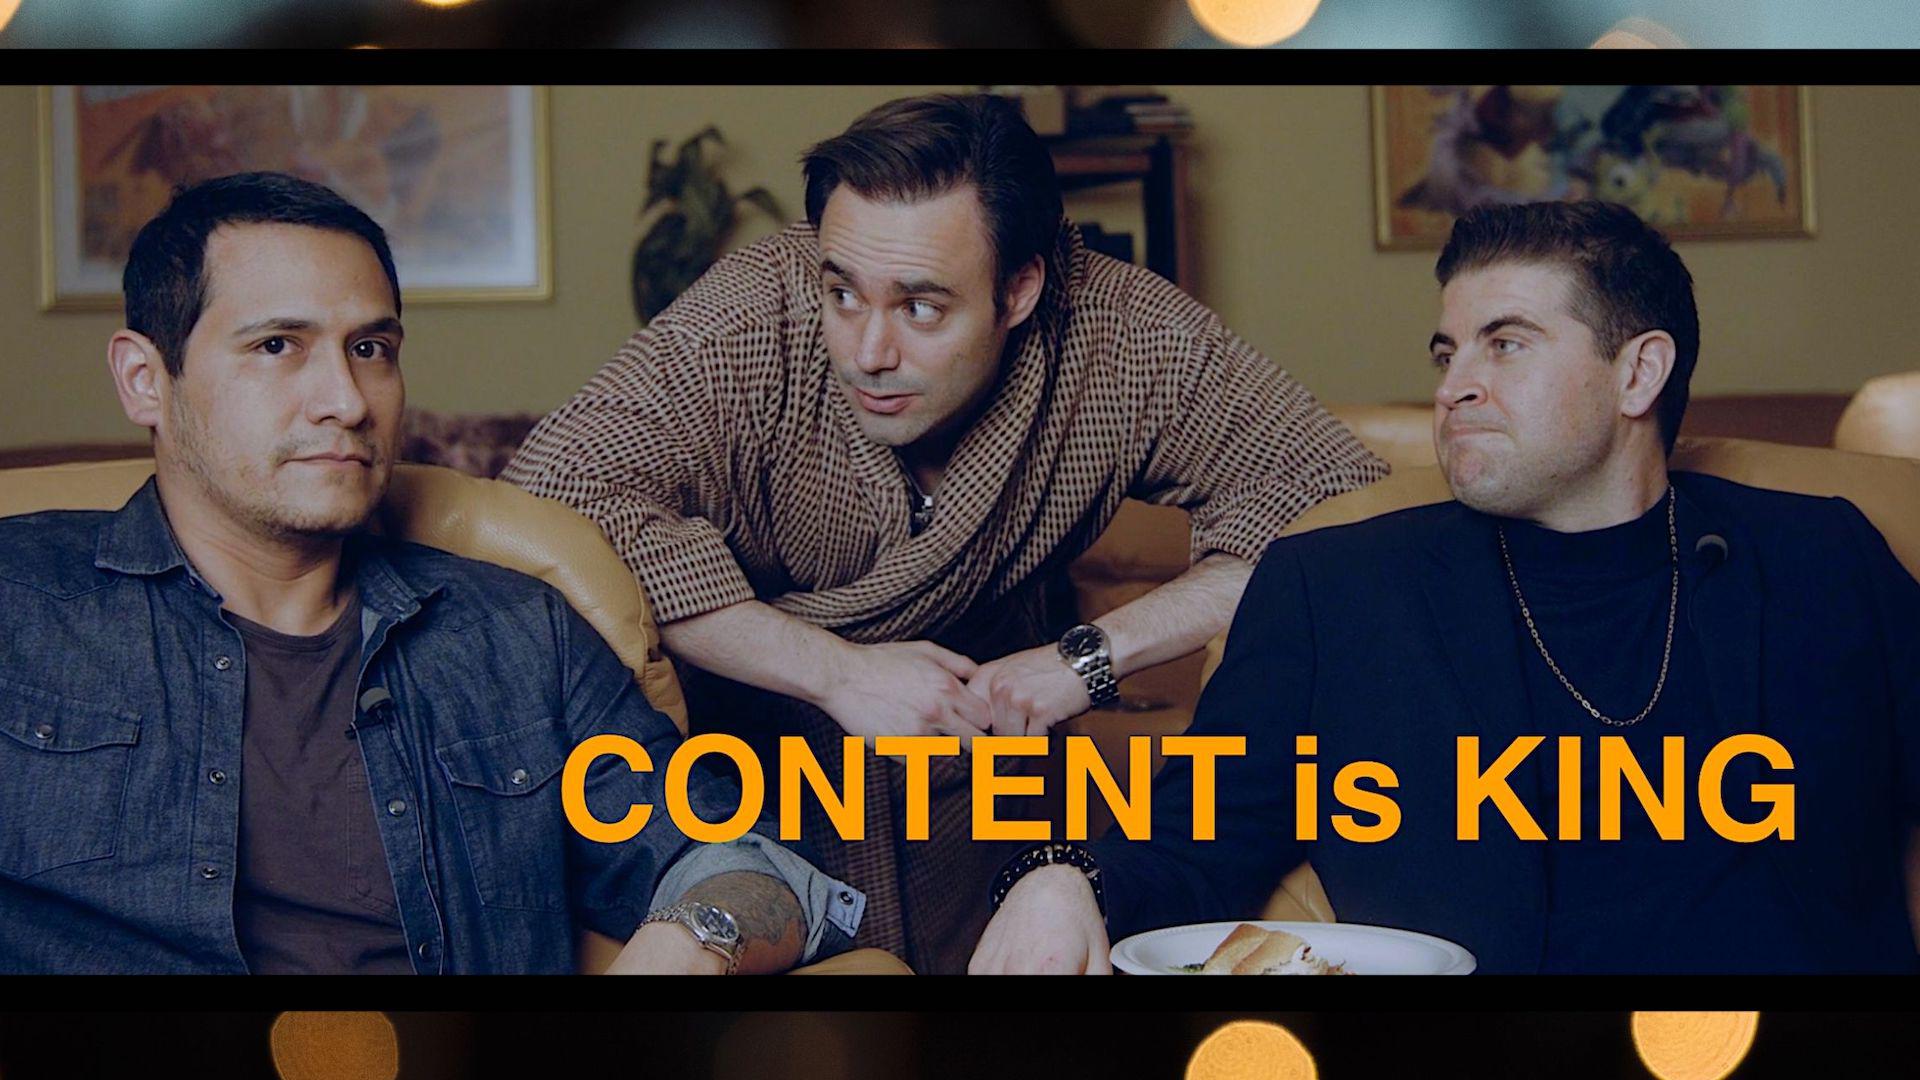 Jaime Zevallos dirige el documental "Content is King" sobre cómo los actores utilizan las redes sociales para sus creaciones.